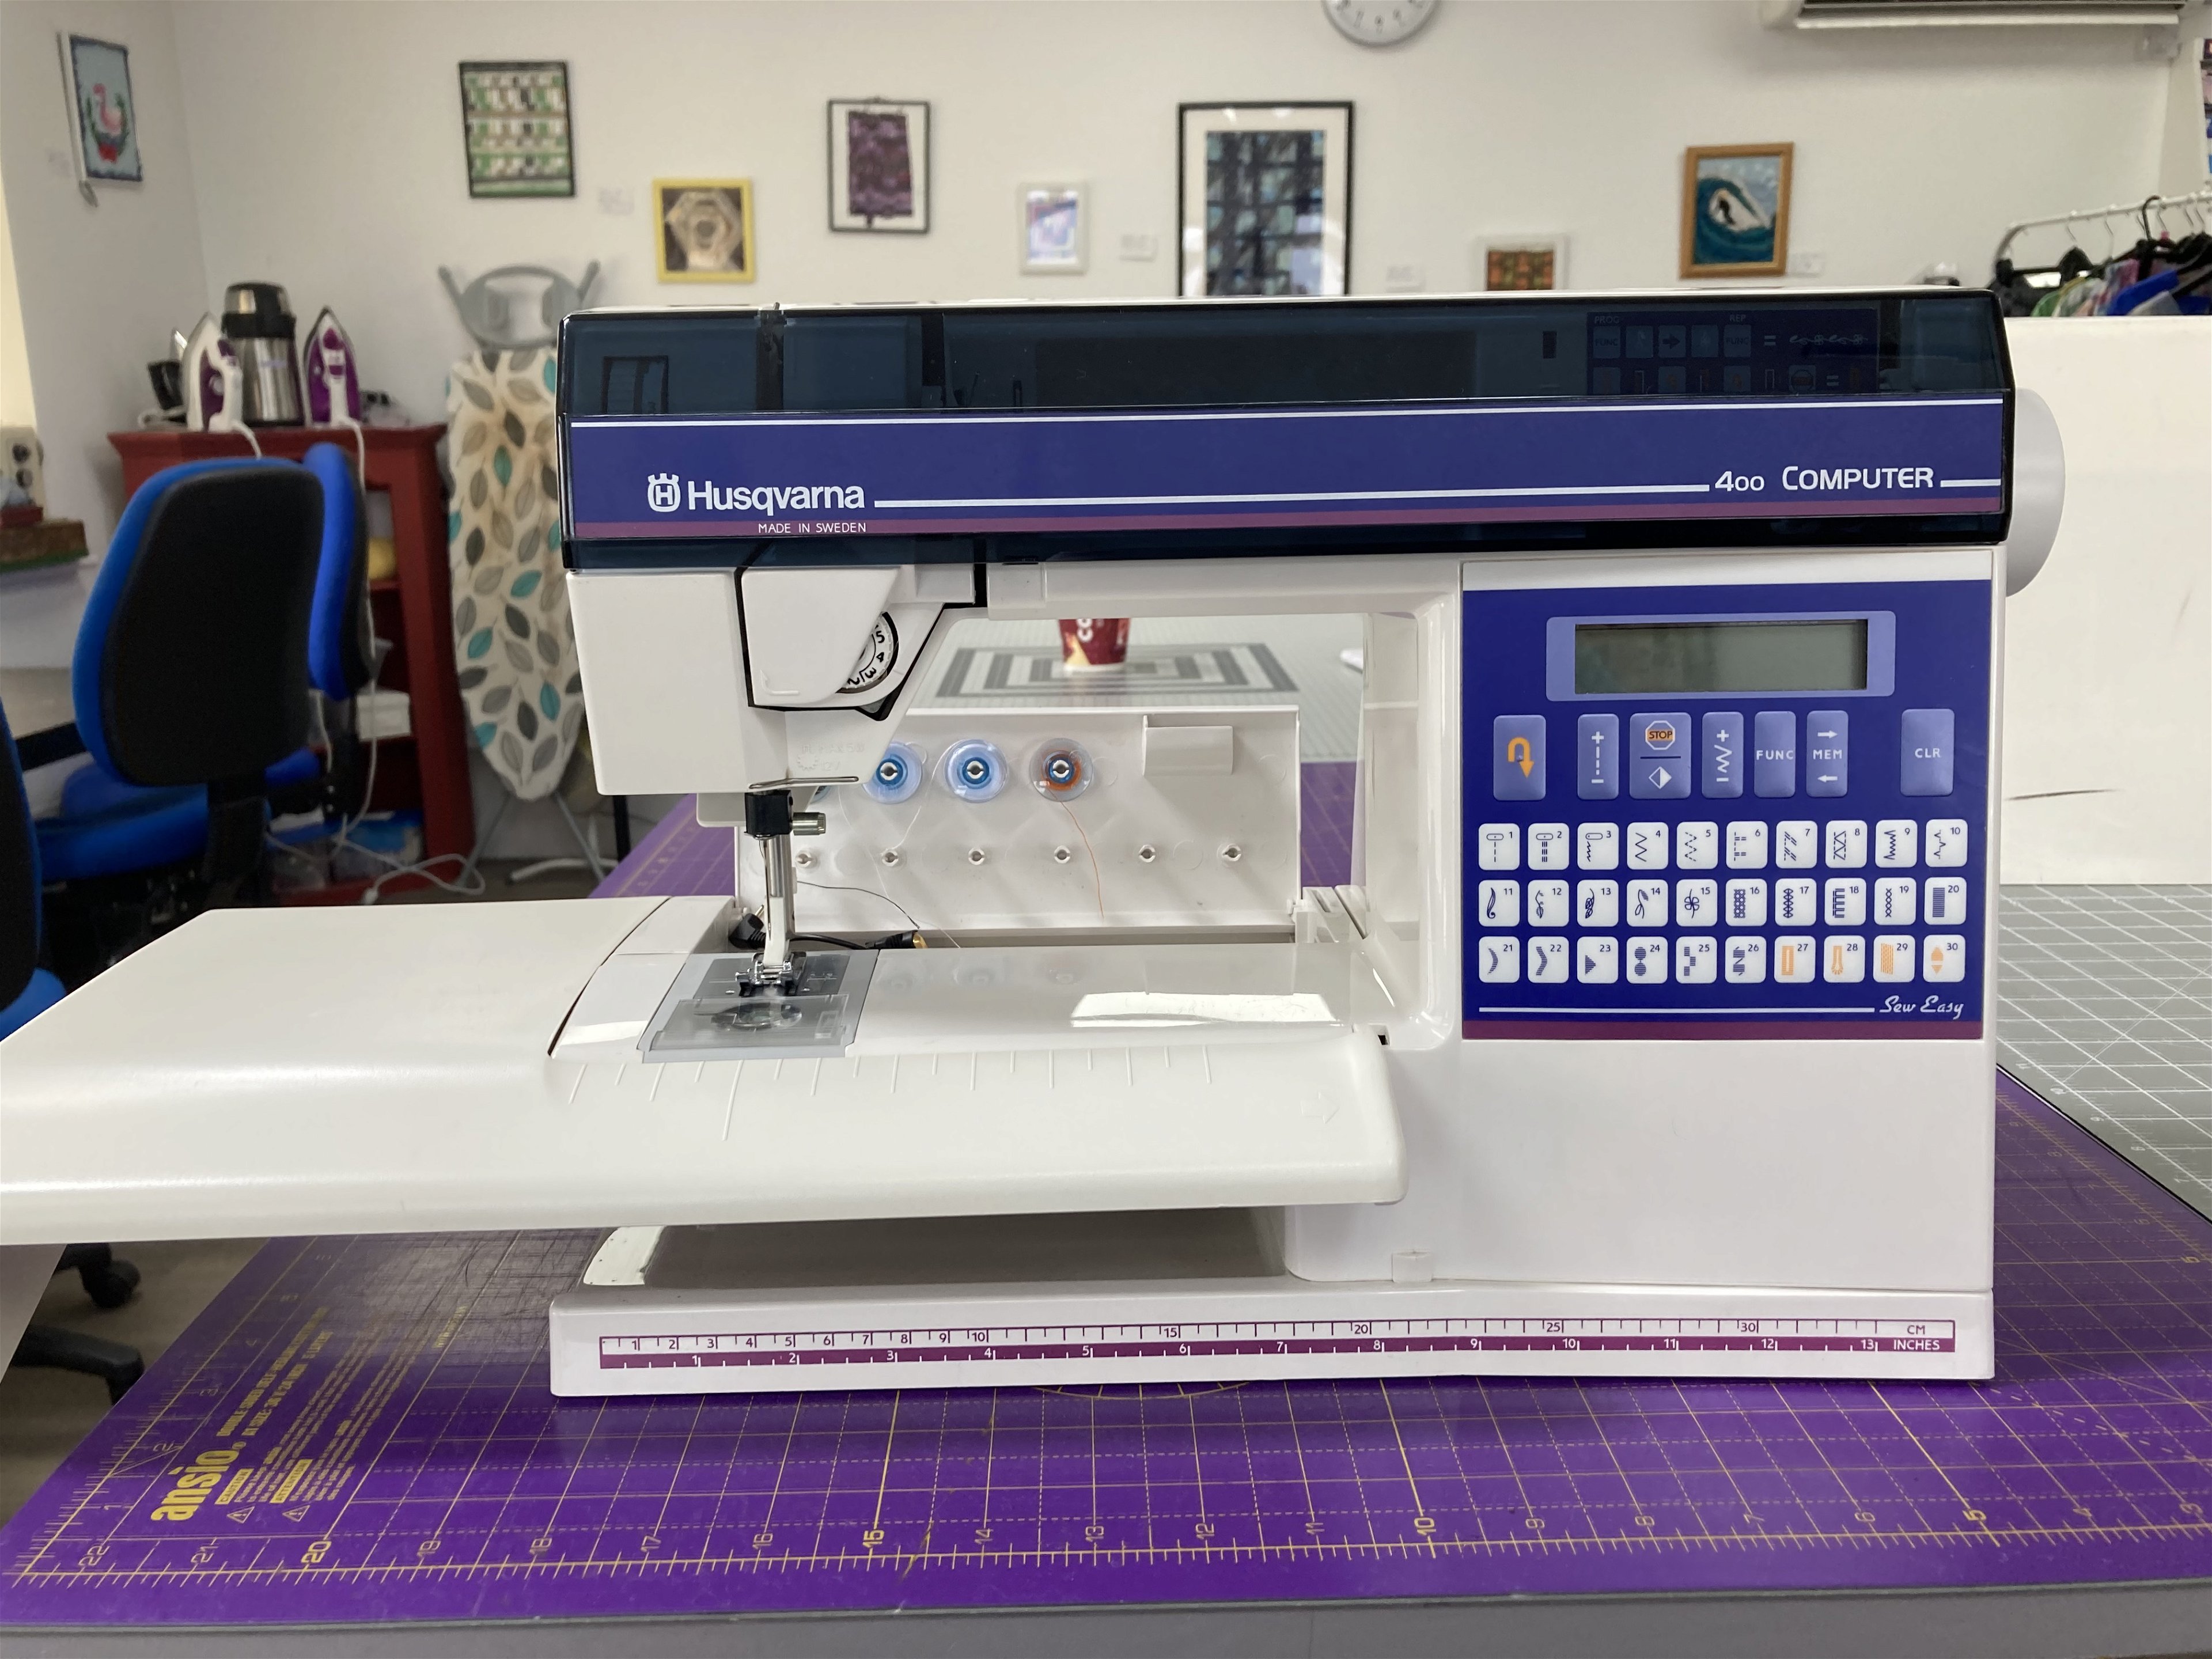 Sewing machine maintenance